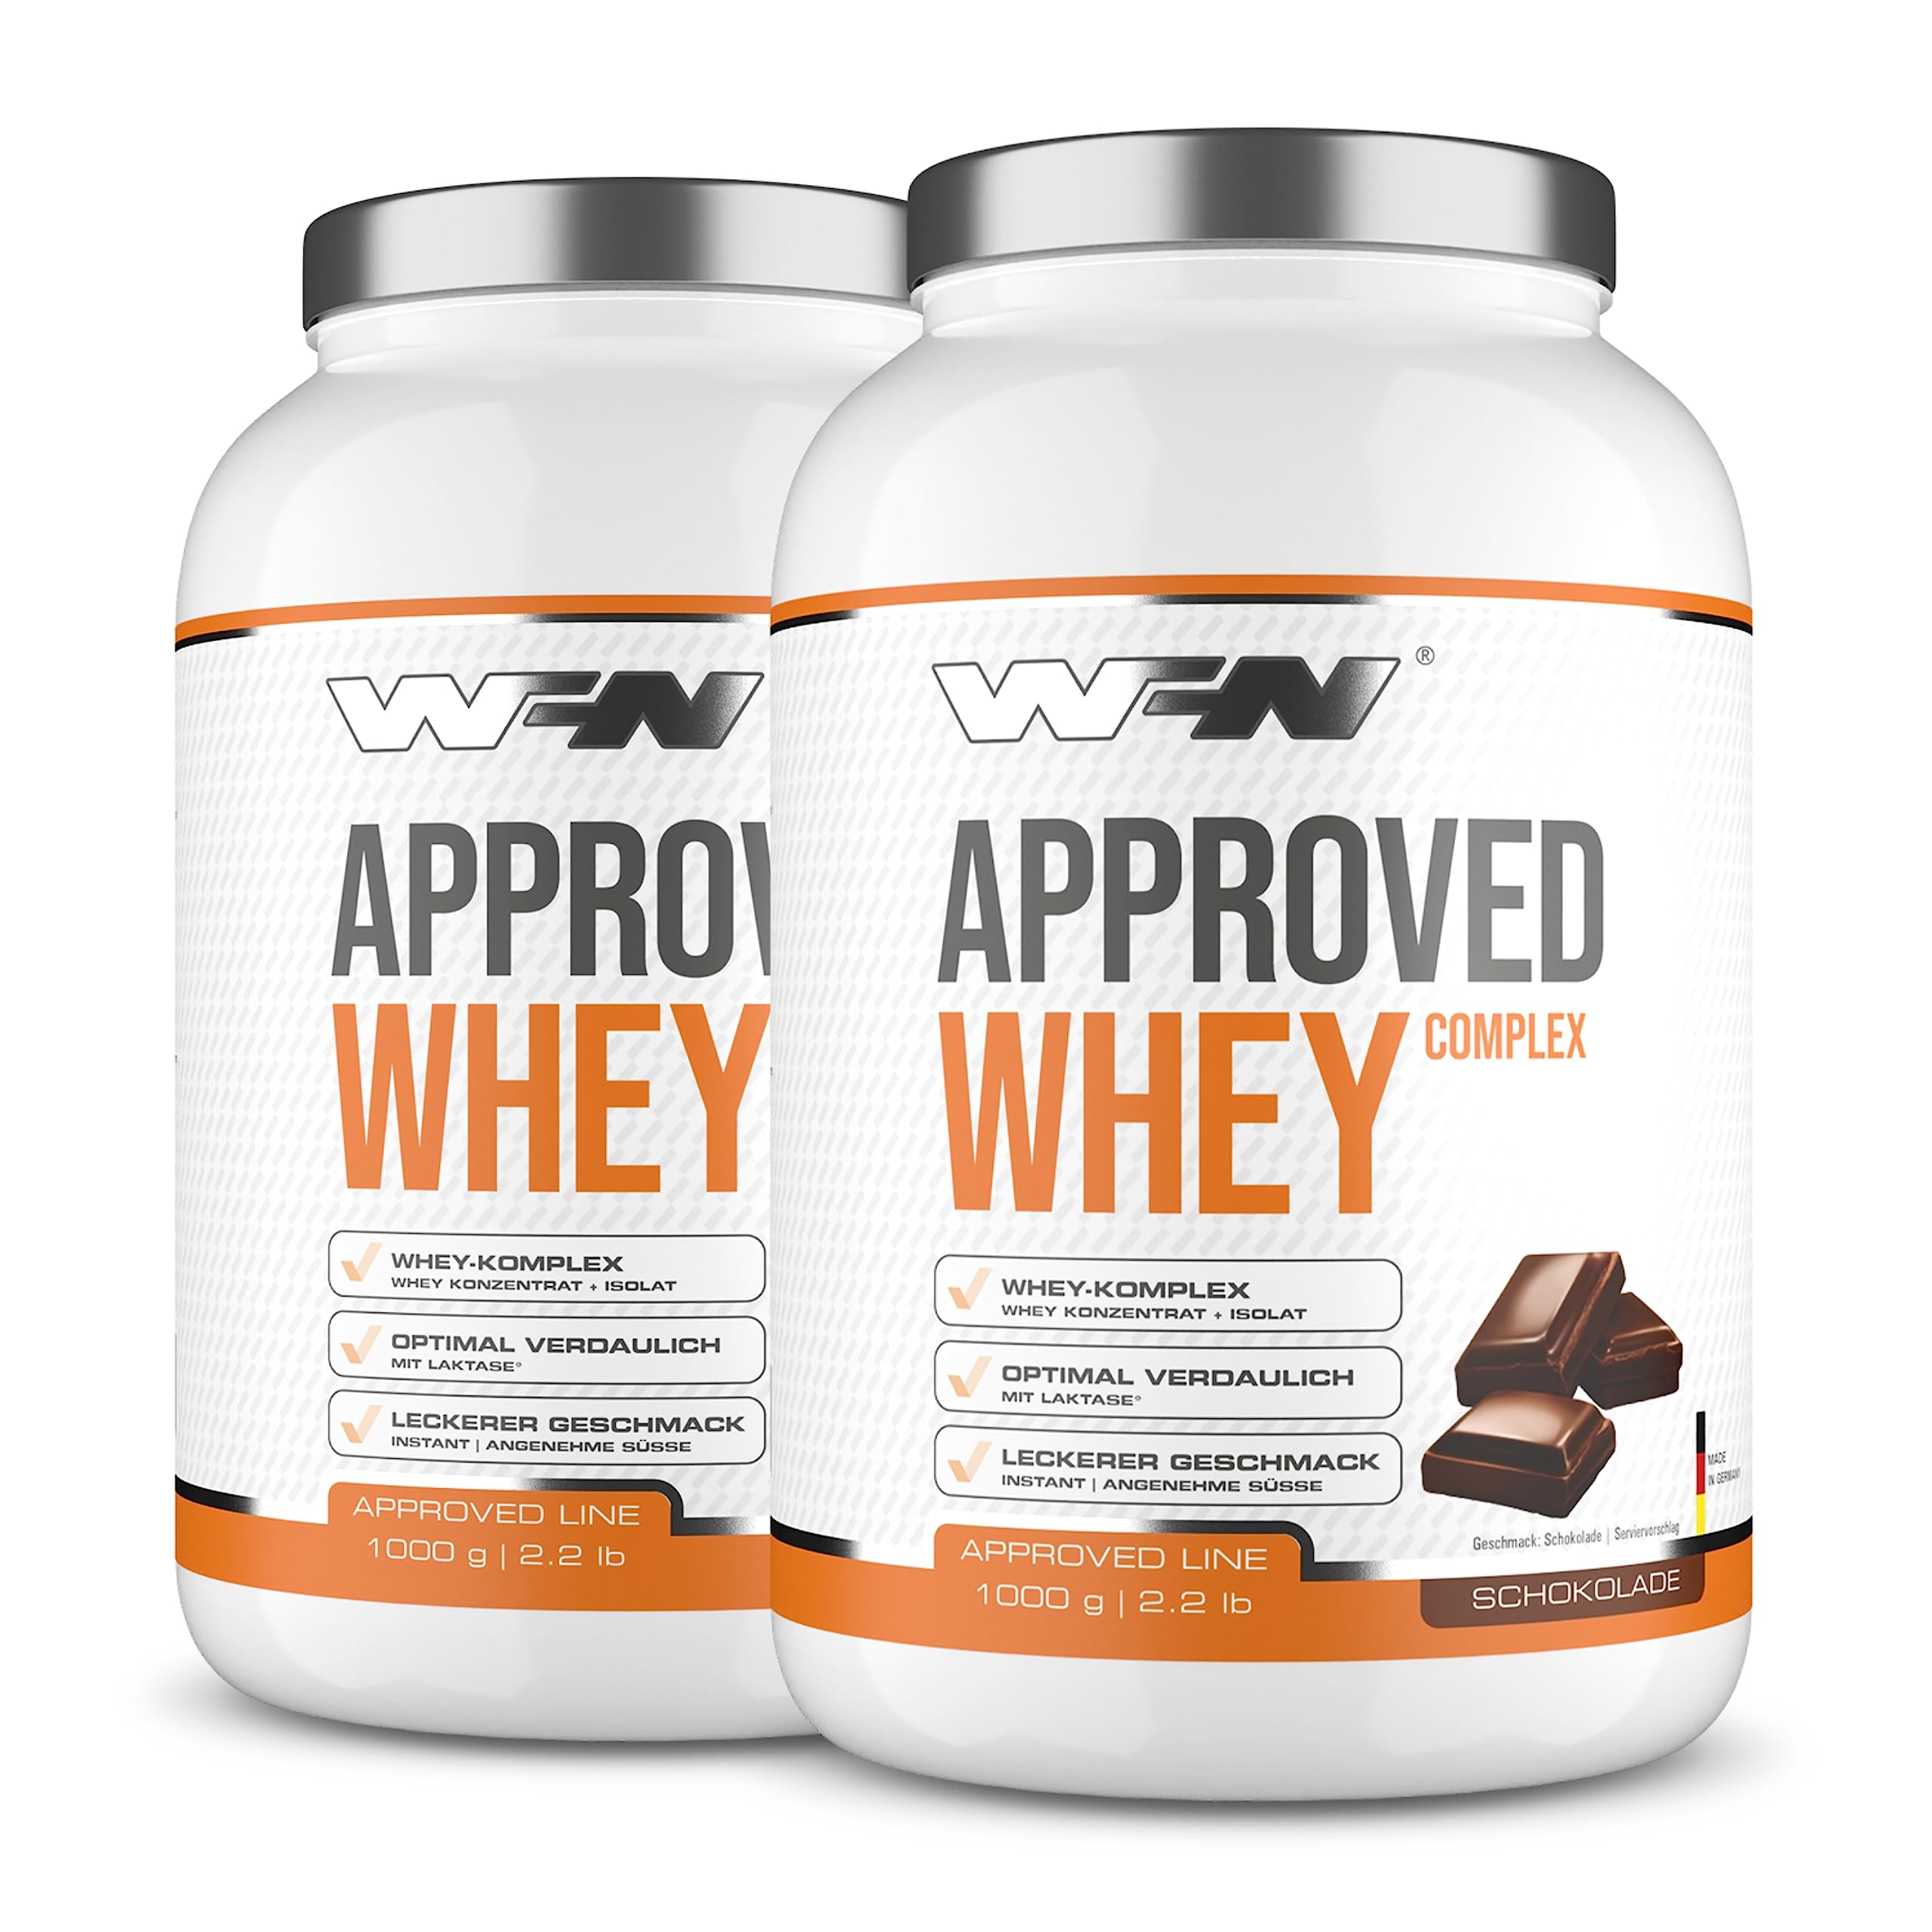 WFN Approved Whey - Whey Proteinpulver - Schokolade - 2x 1 kg - Mit Whey Protein Isolat & Laktase - Sehr gut lösliches Eiweißpulver - 33 Portionen - Made in Germany - Extern Laborgeprüft